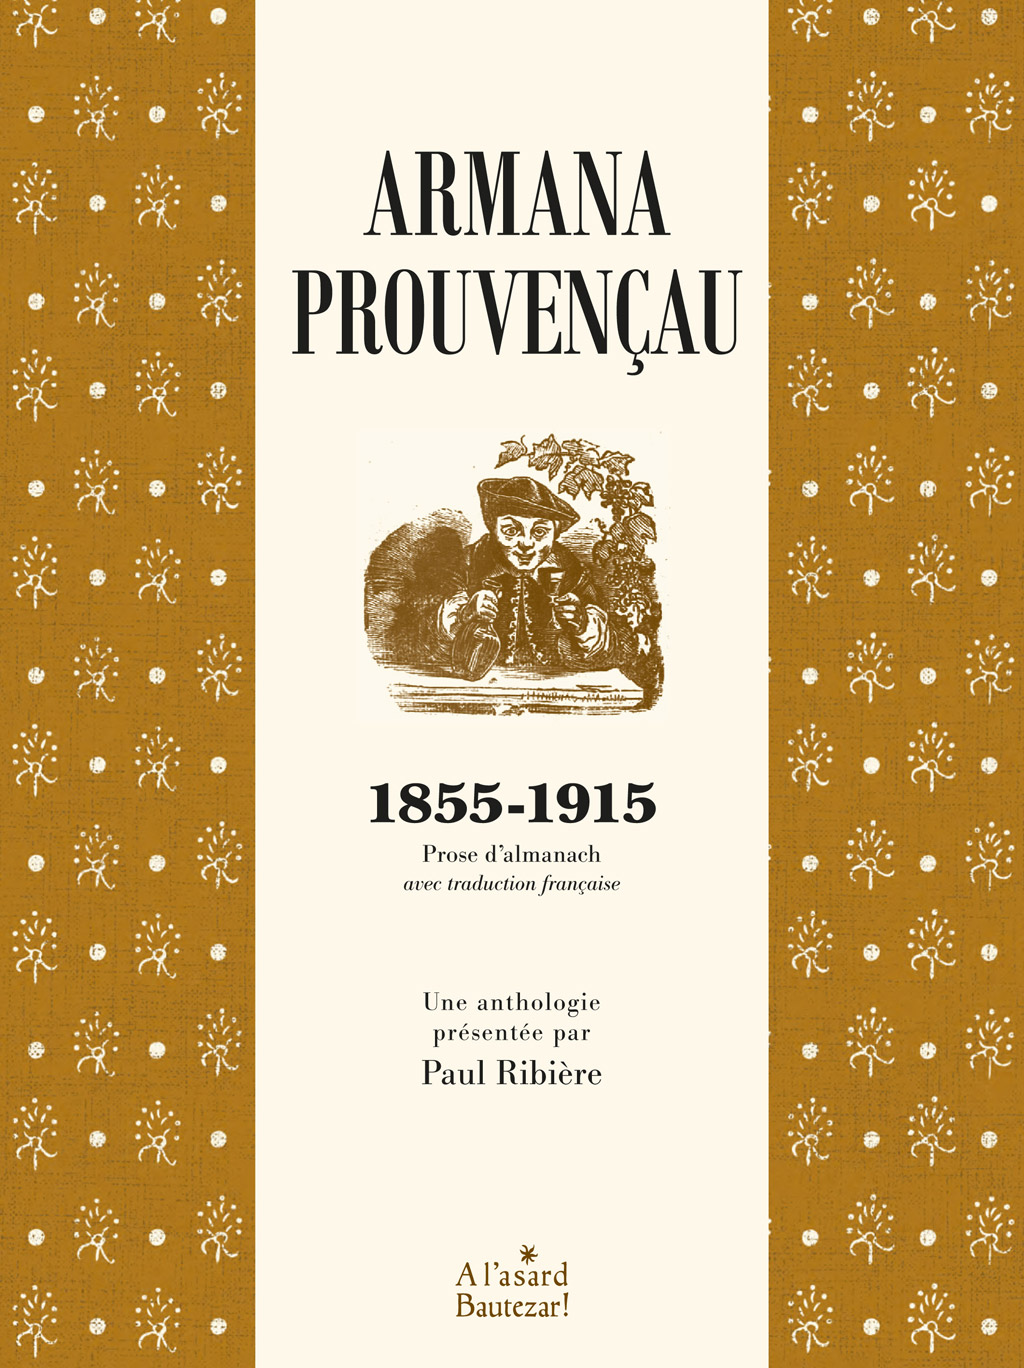 Couverture du livre Armana prouvençau 1855-1915